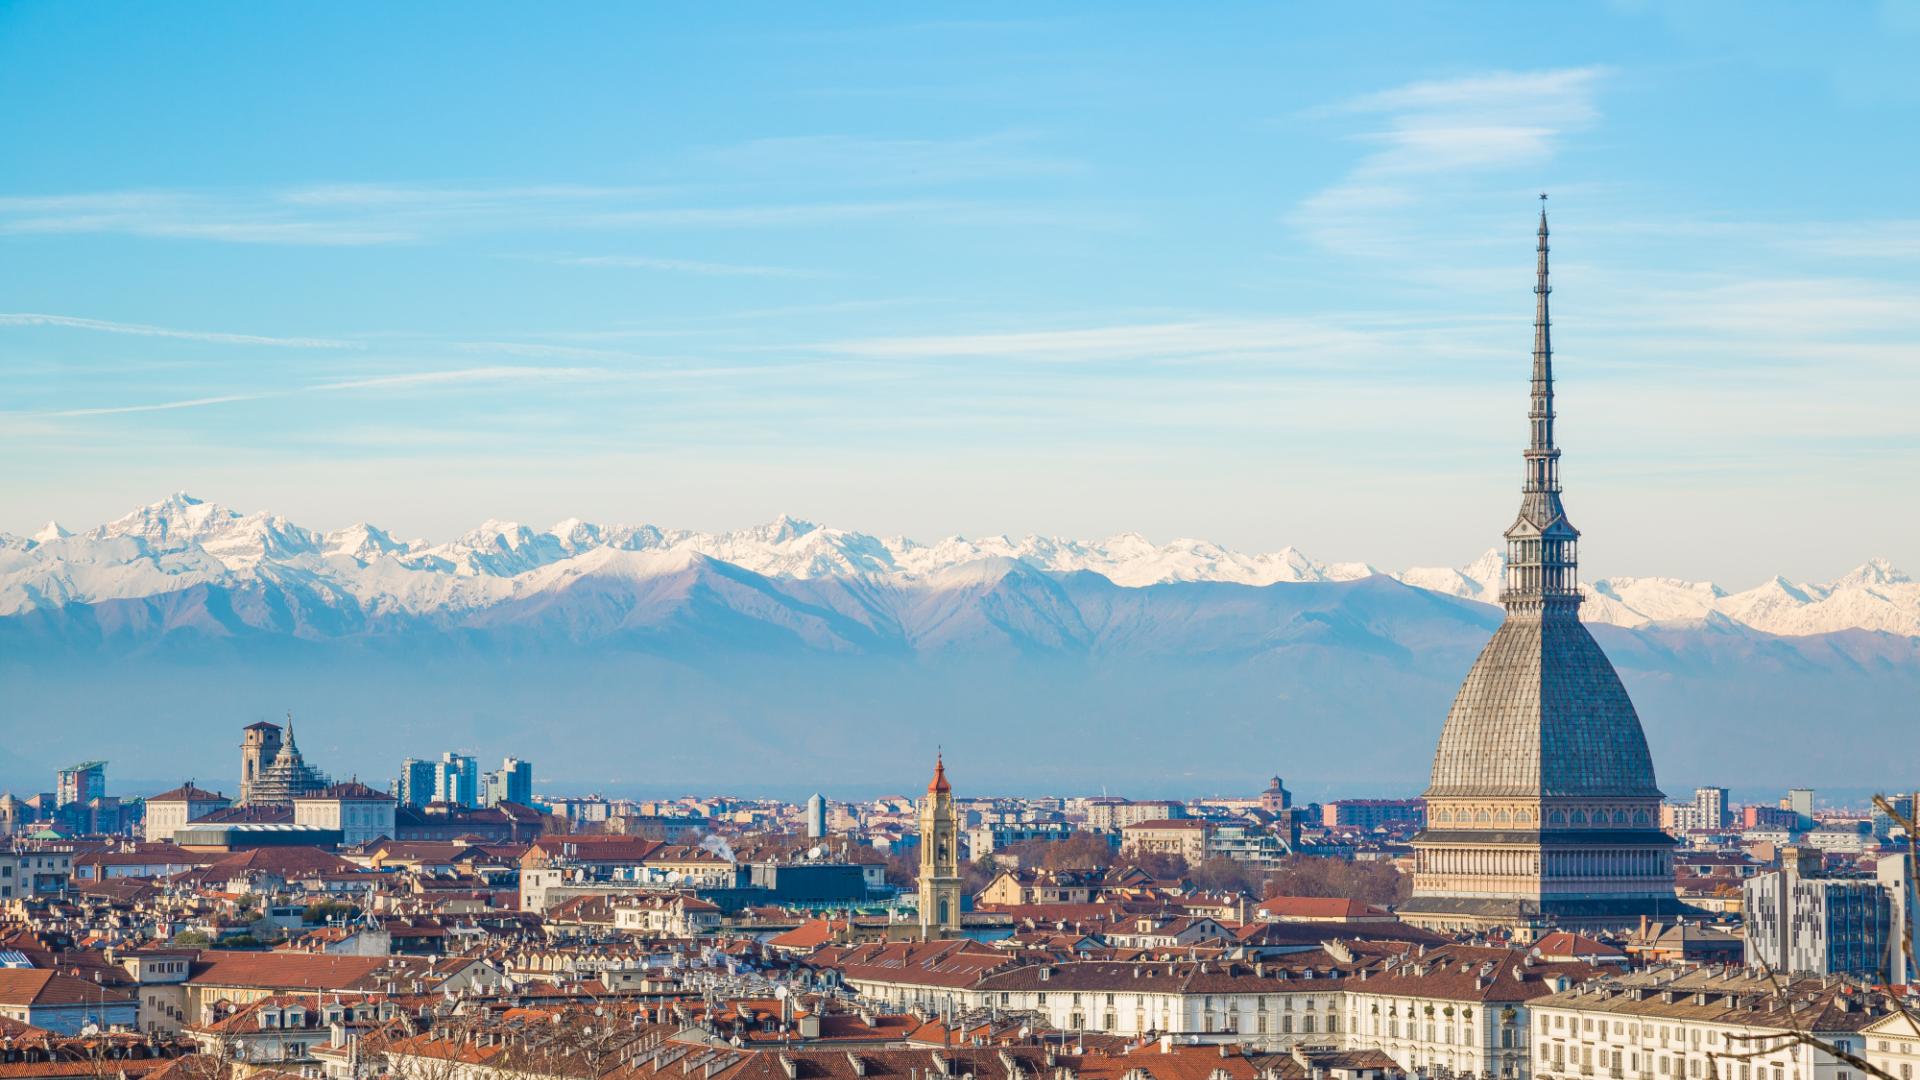 Dieci cose da vedere a Torino in un giorno